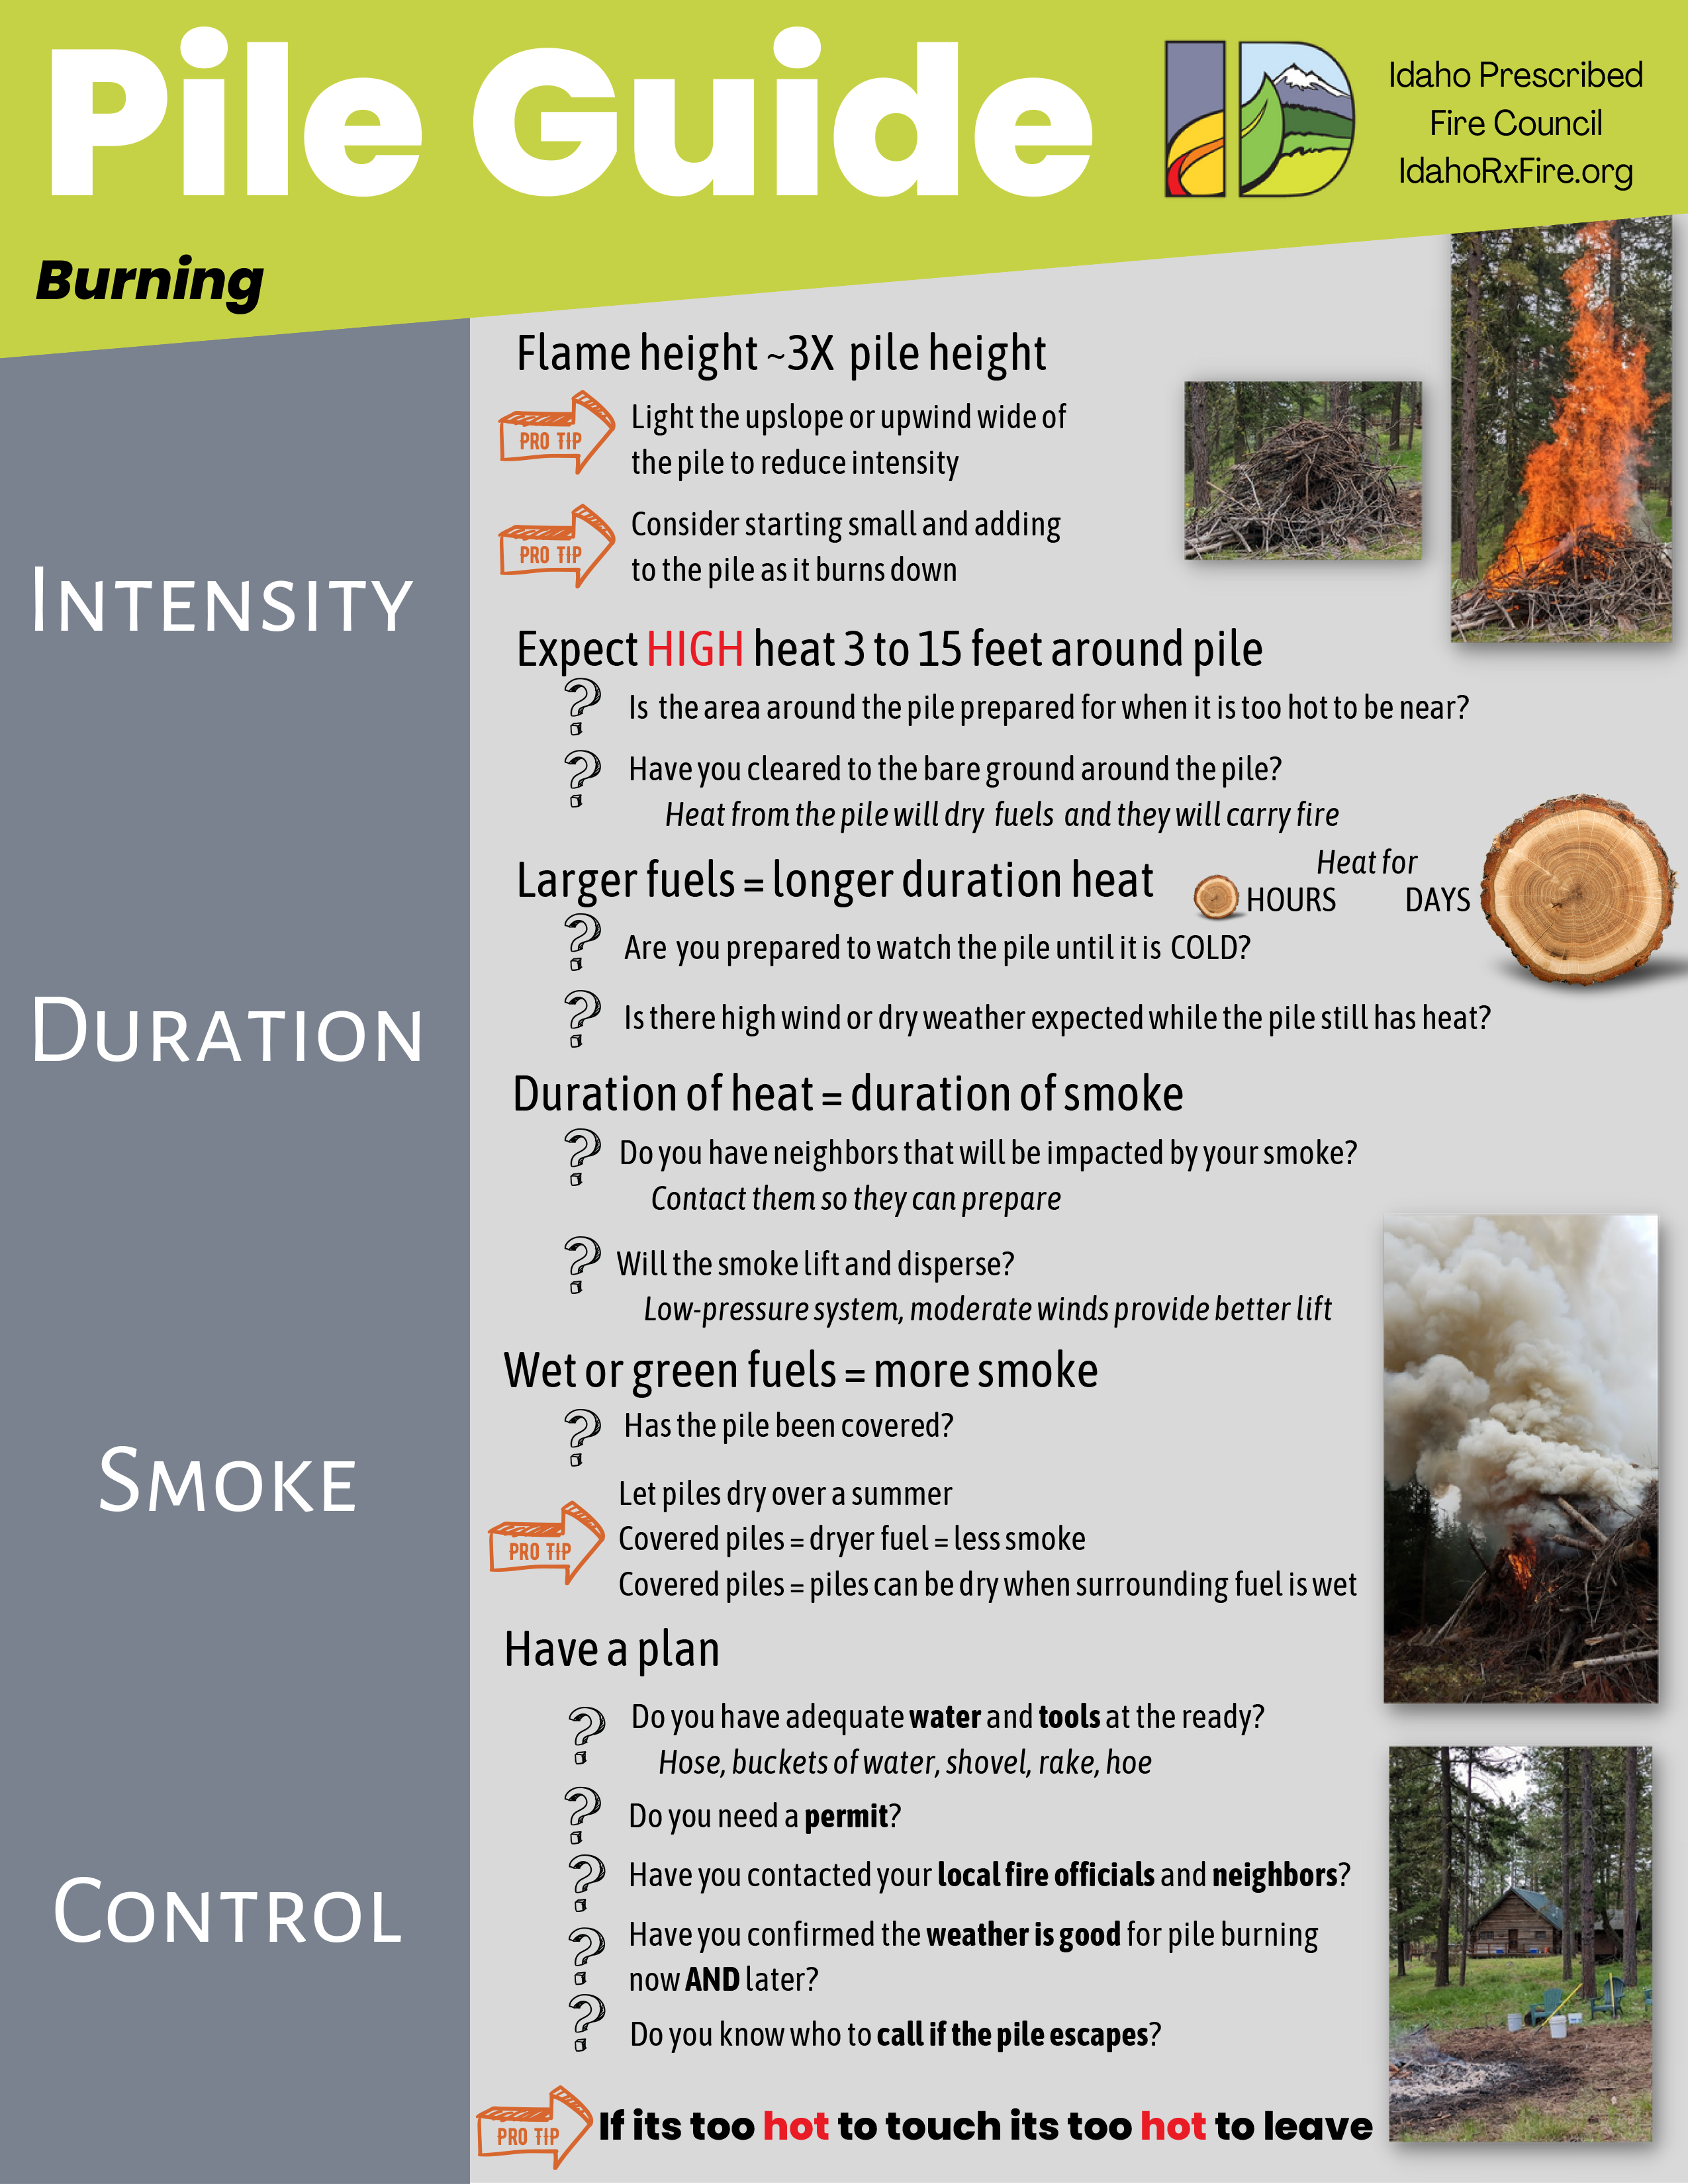 Idaho PFC Pile Guide Burning graphic